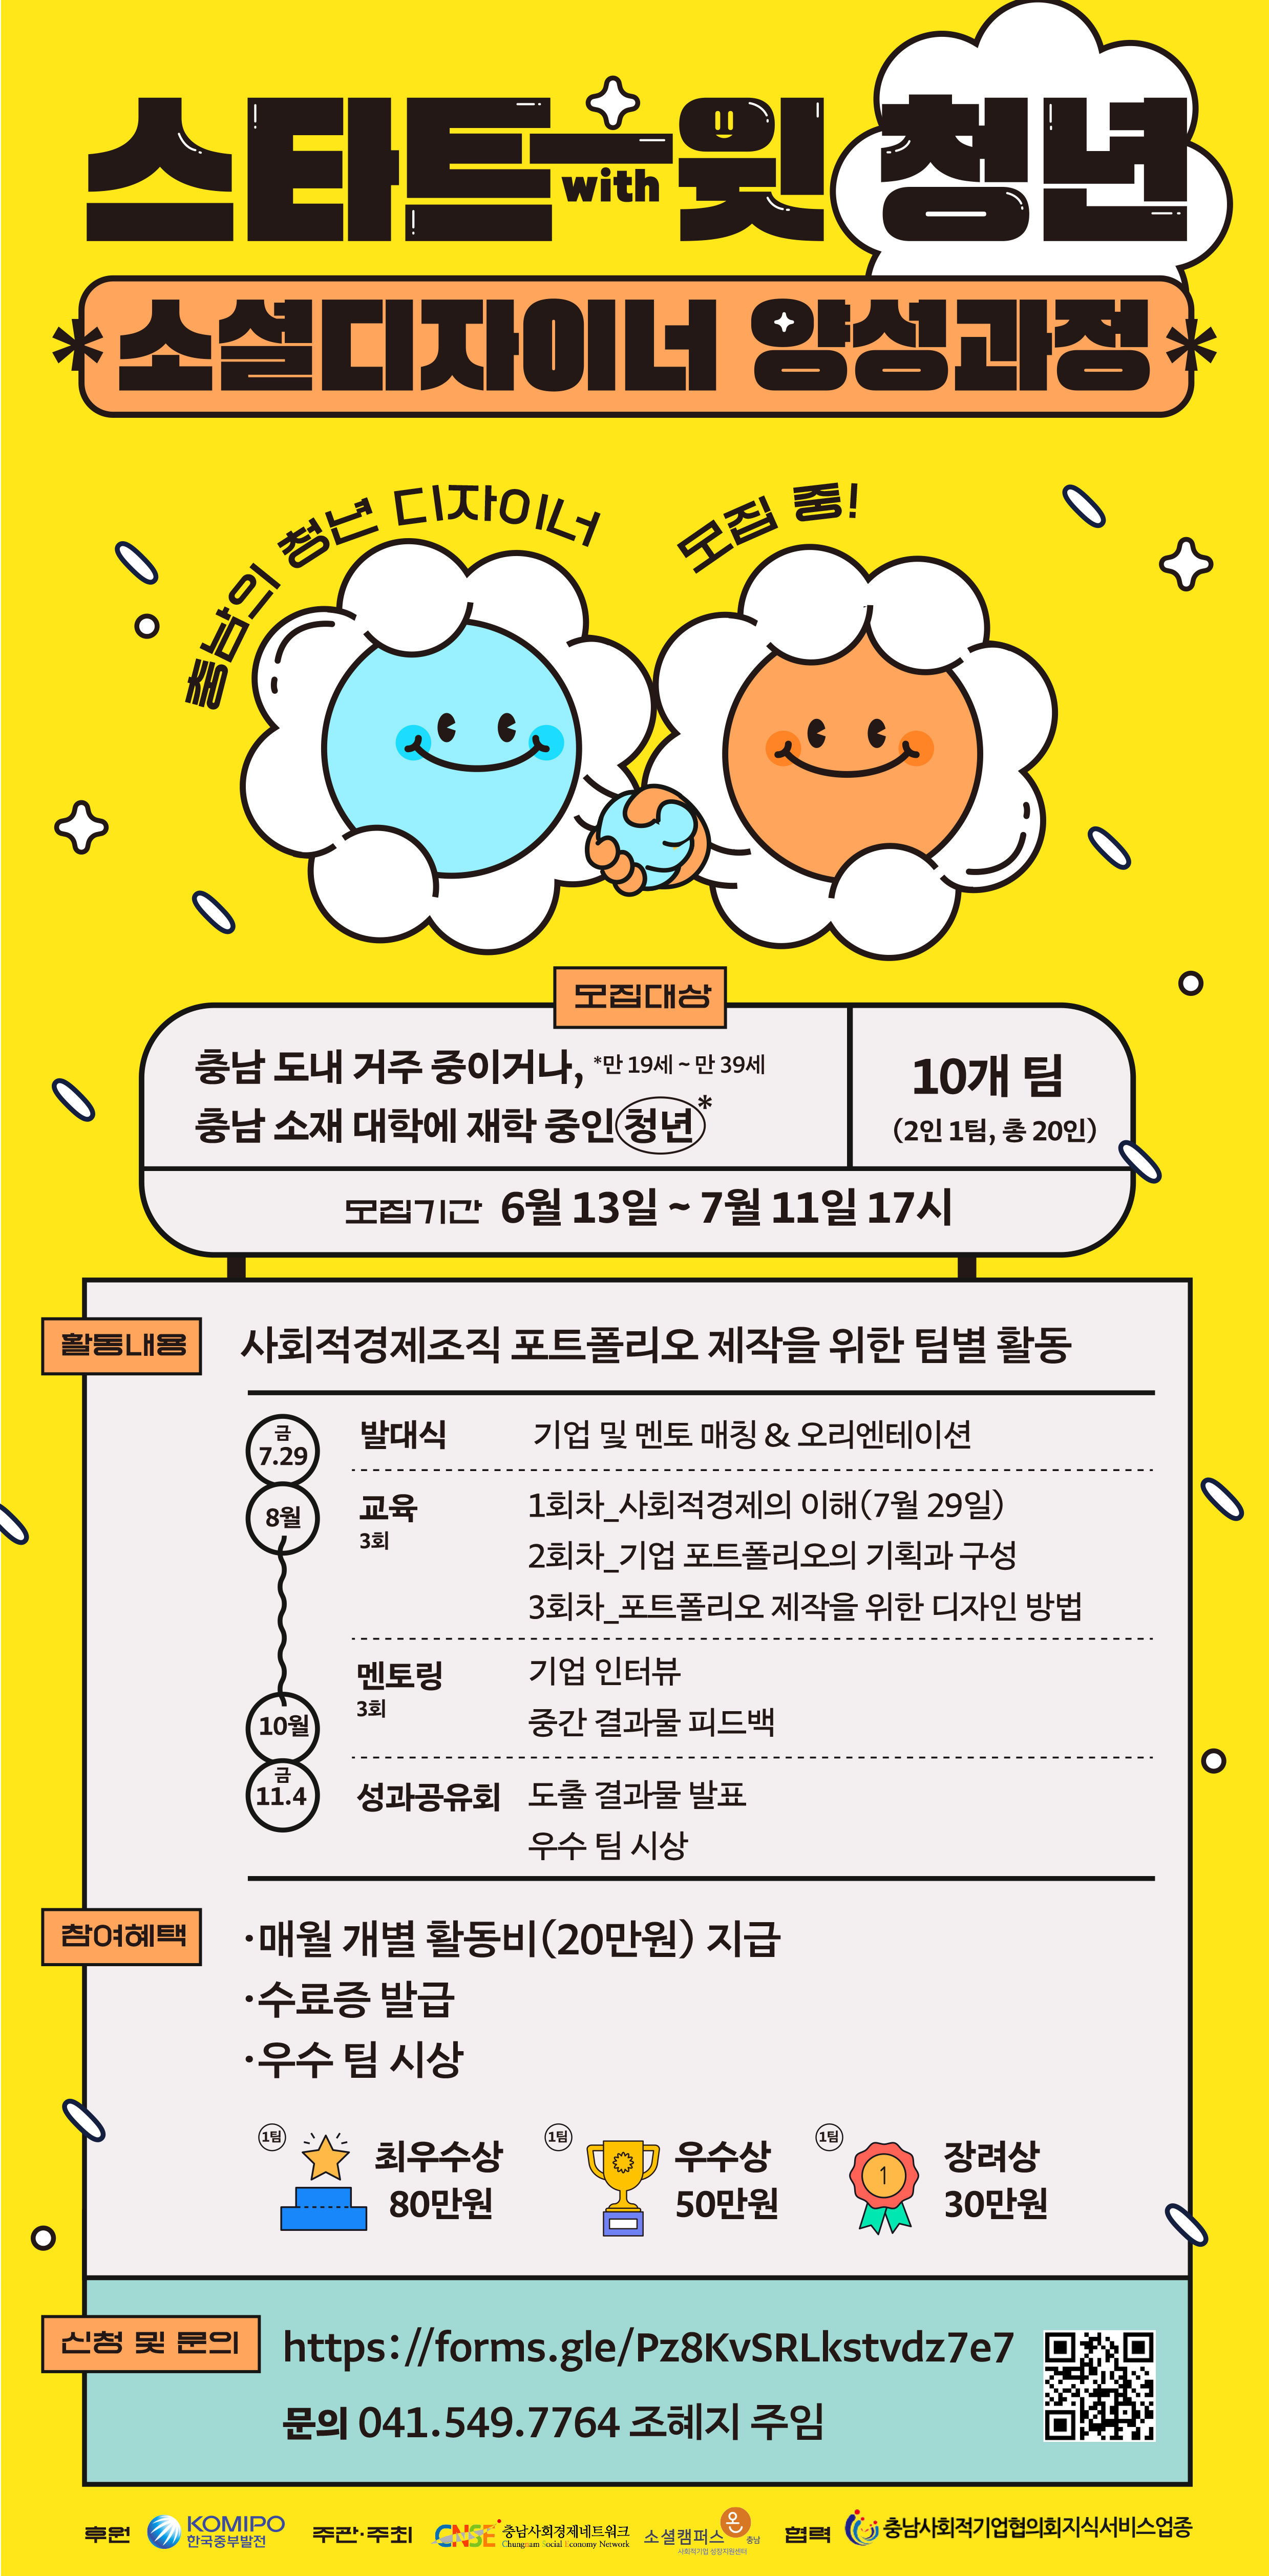 스타트-윗(with) 청년: 소셜디자이너 양성과정 참가자 모집!